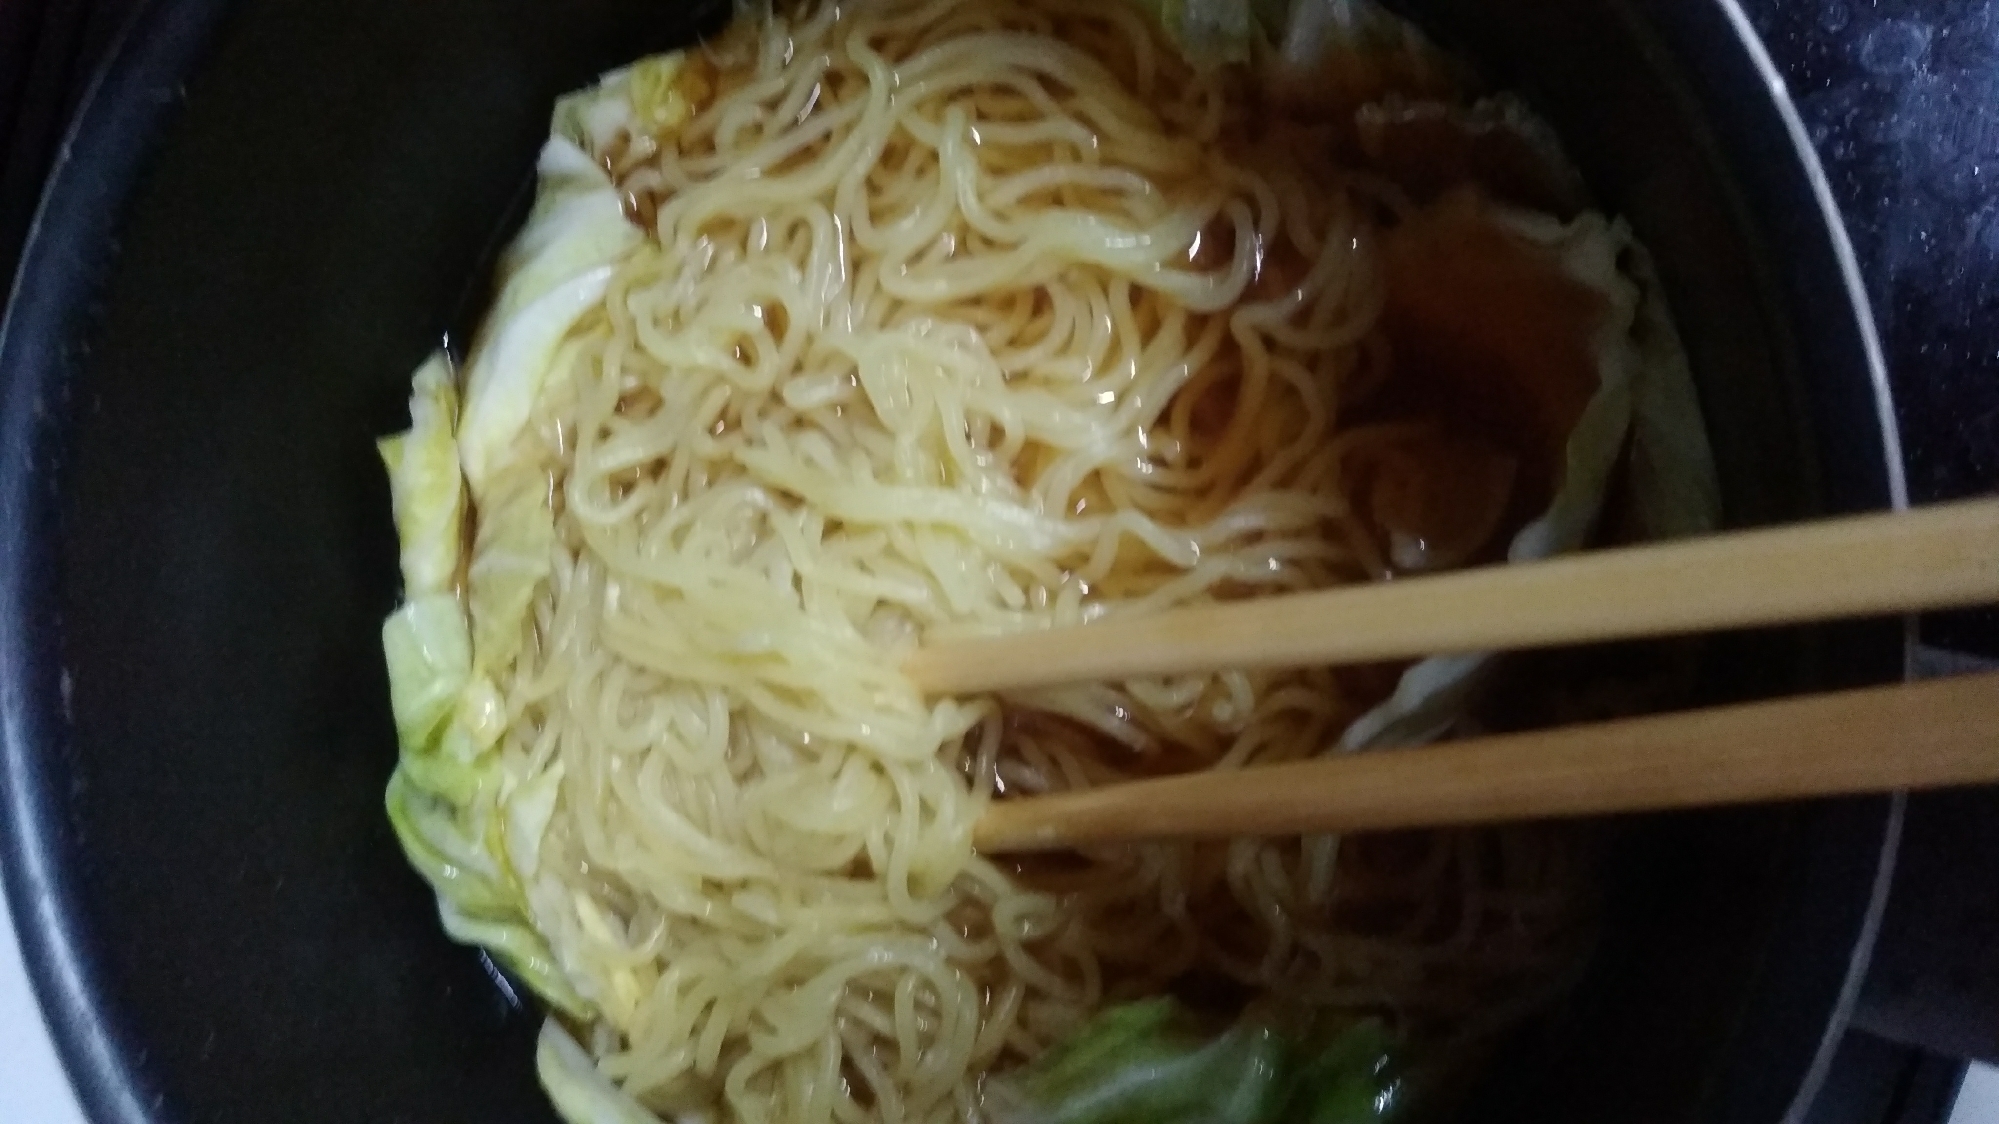 キャベツ生姜麺